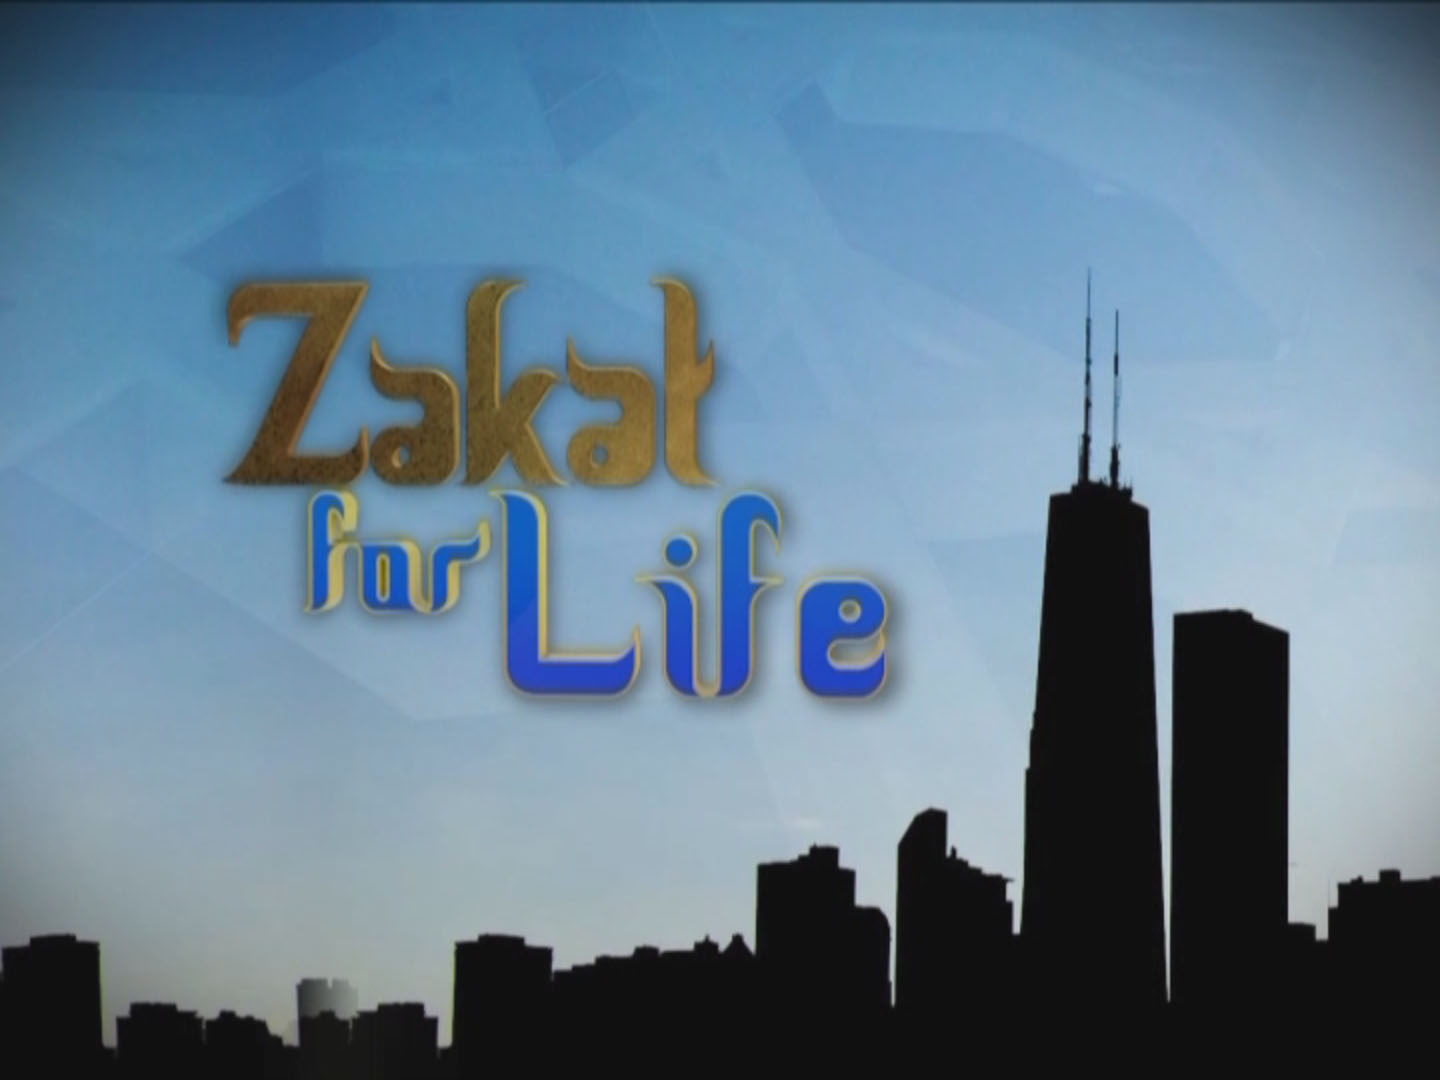 Zakat for Life